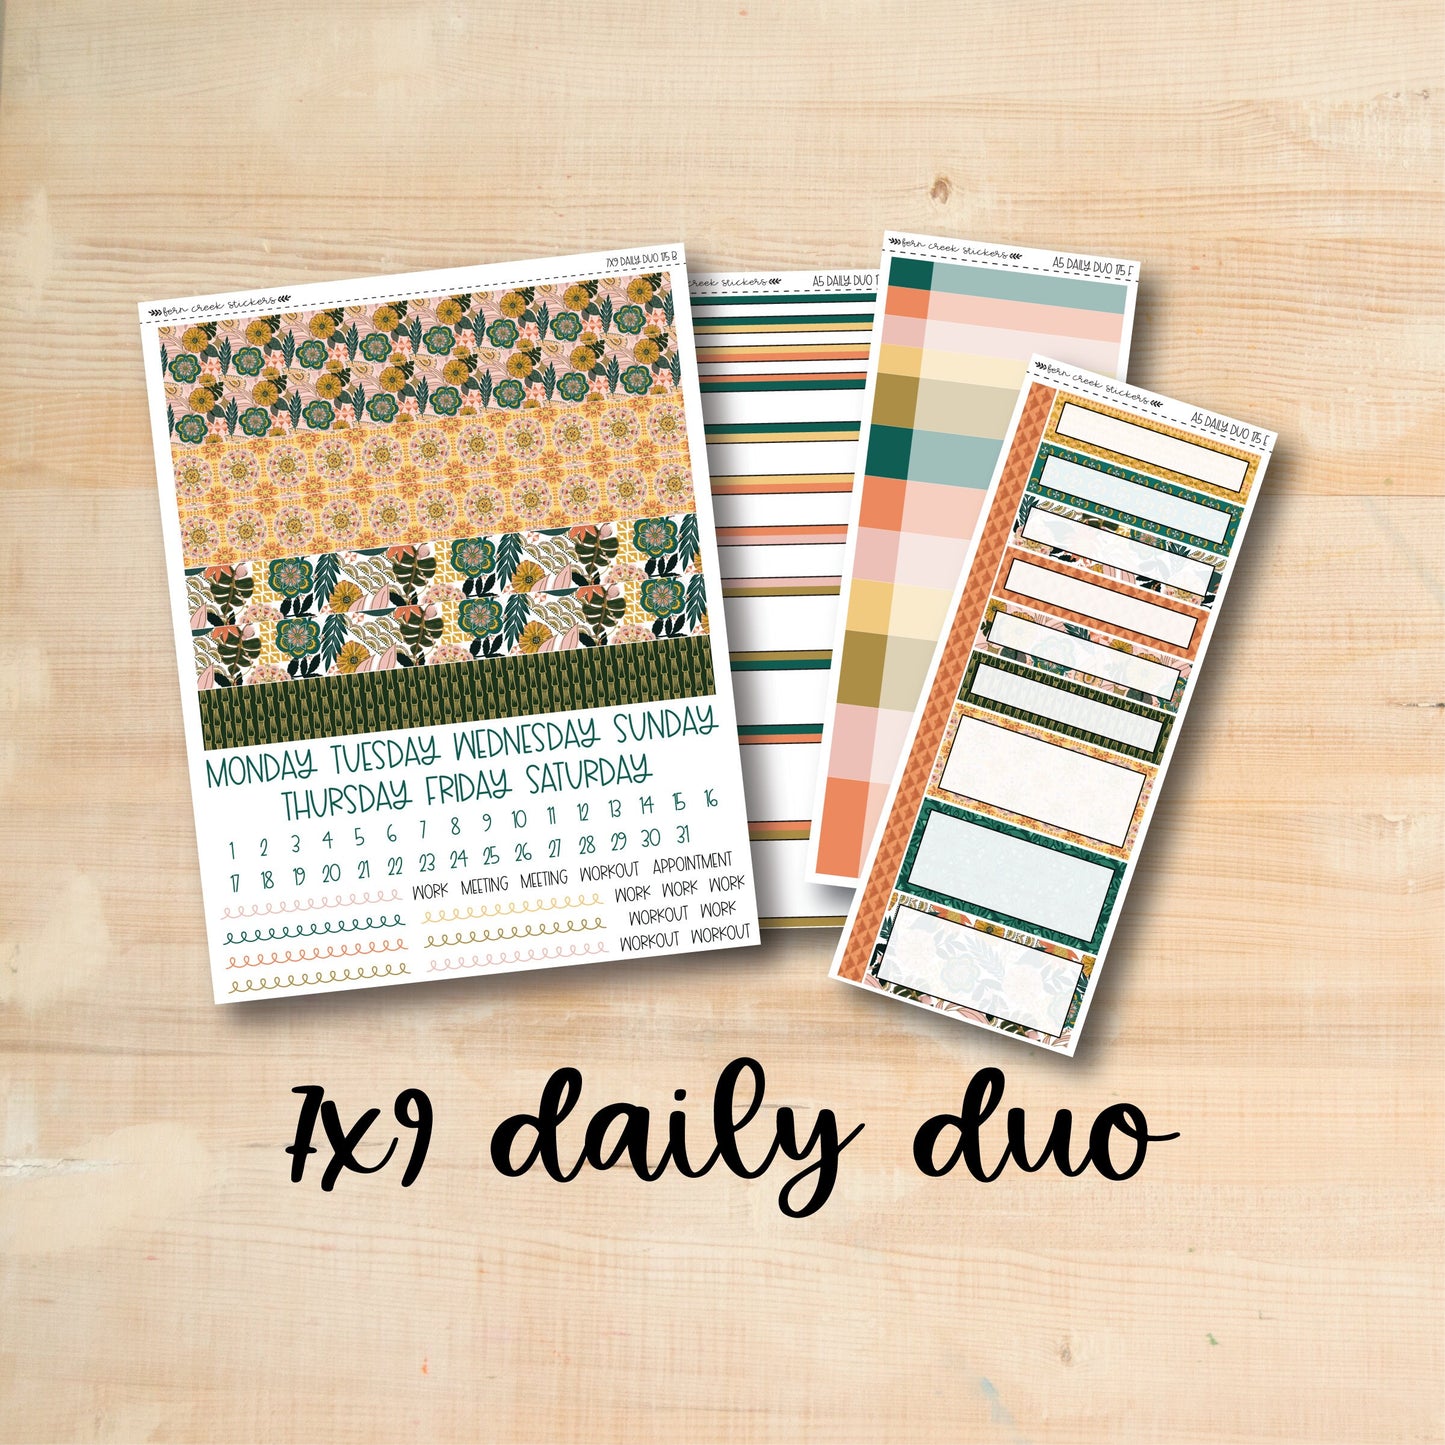 7x9 Daily Duo 175 || BOHO TROPICAL 7x9 Daily Duo Kit